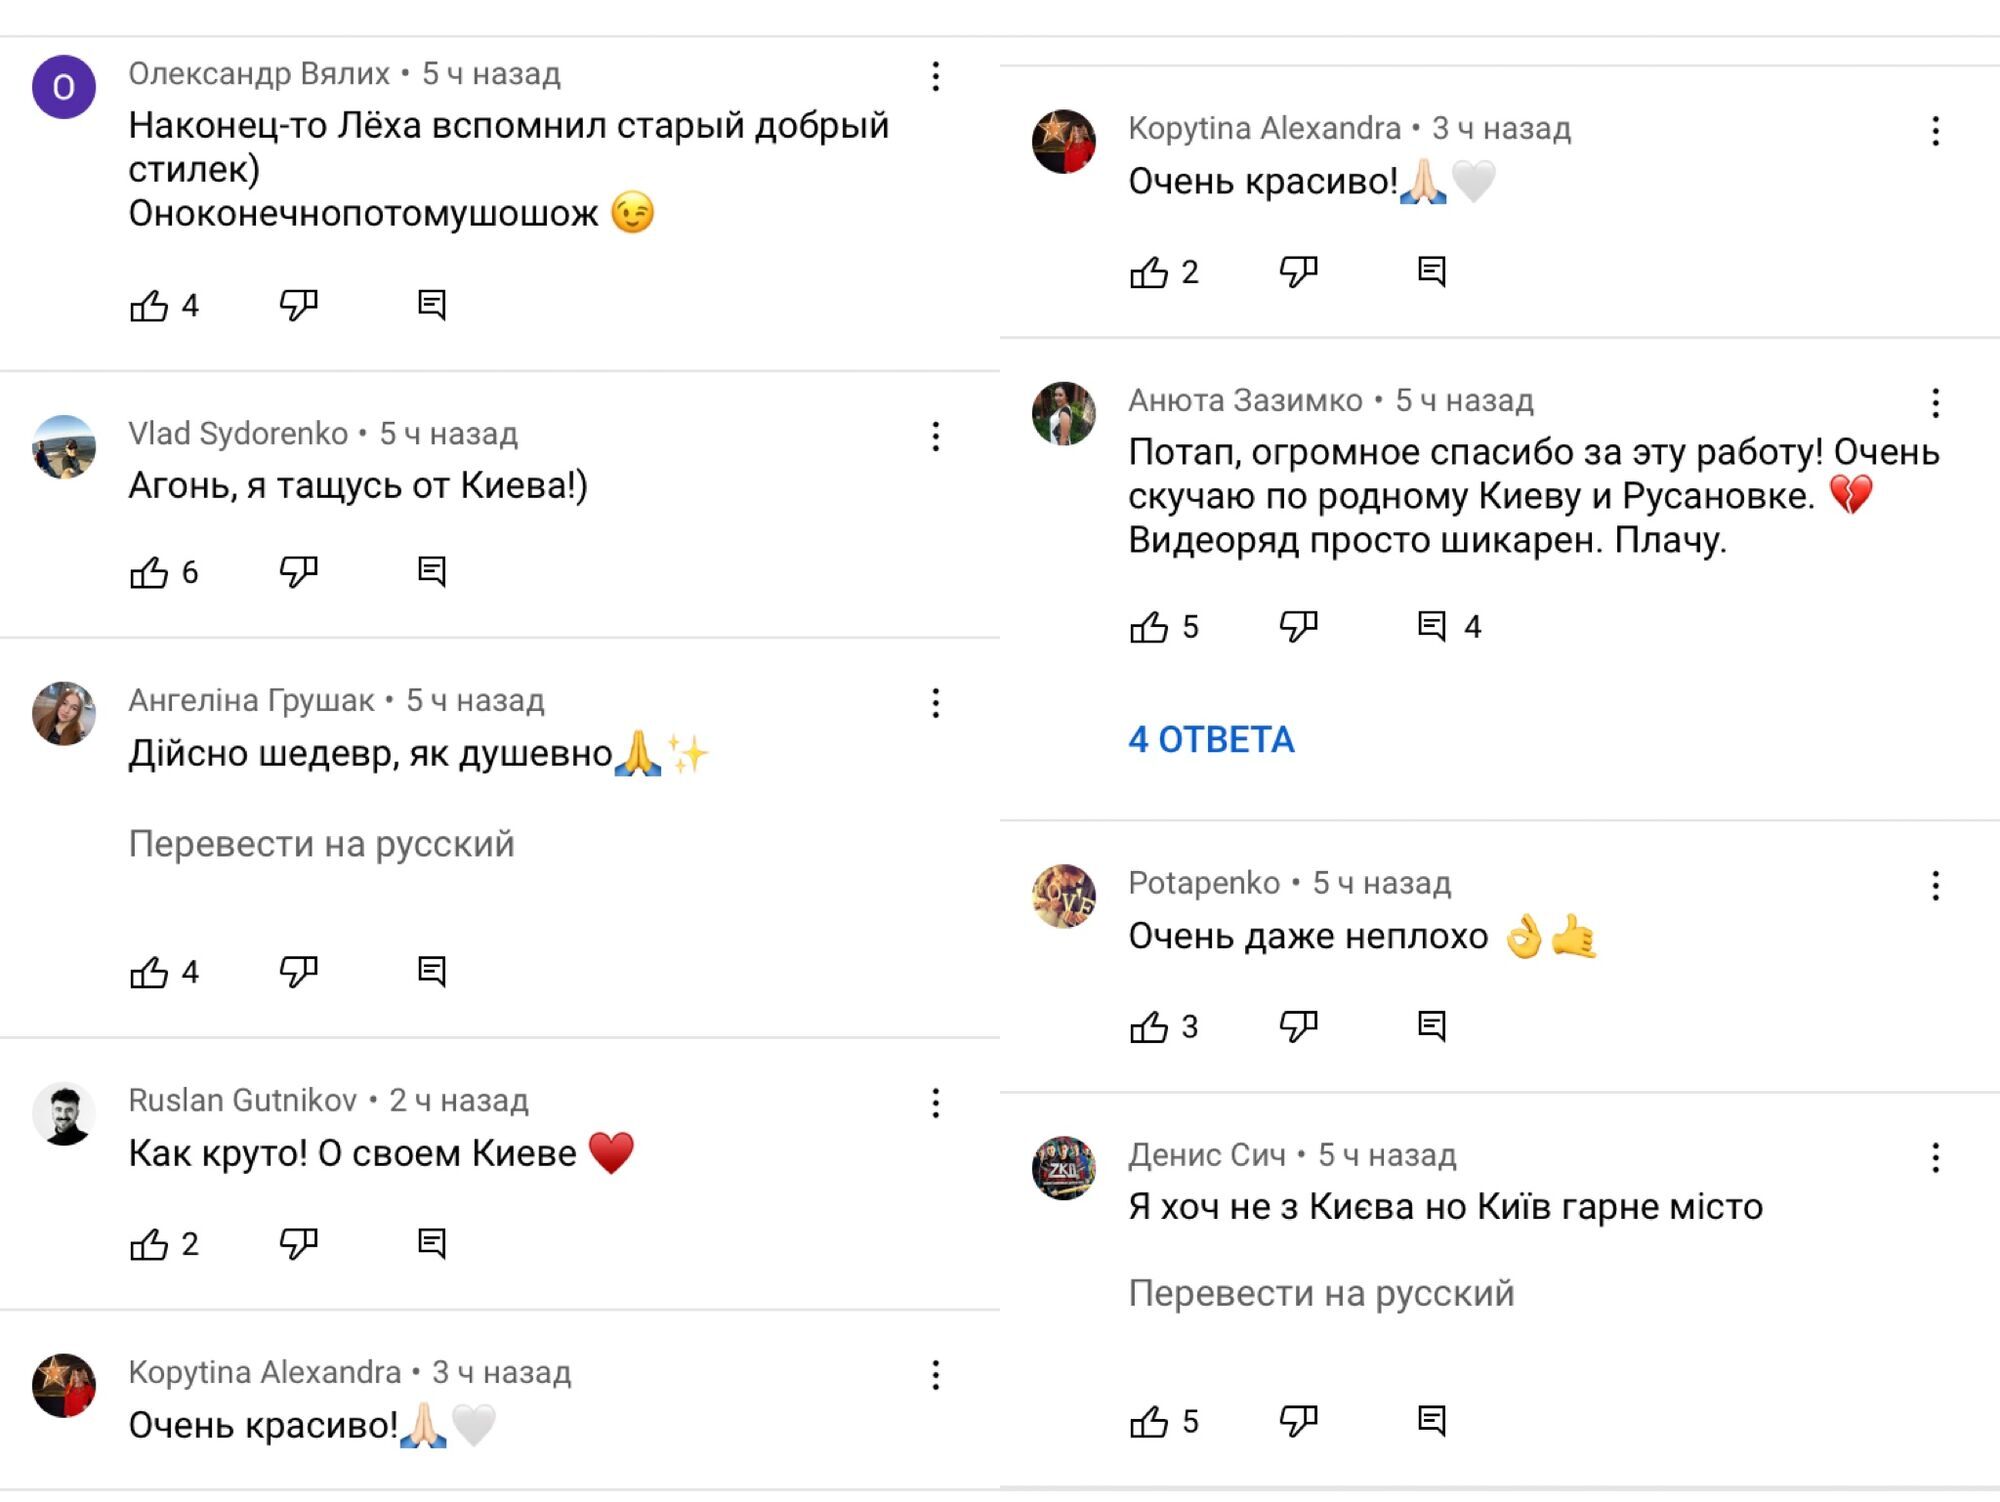 Коментарі під треком "Київ" Потапа